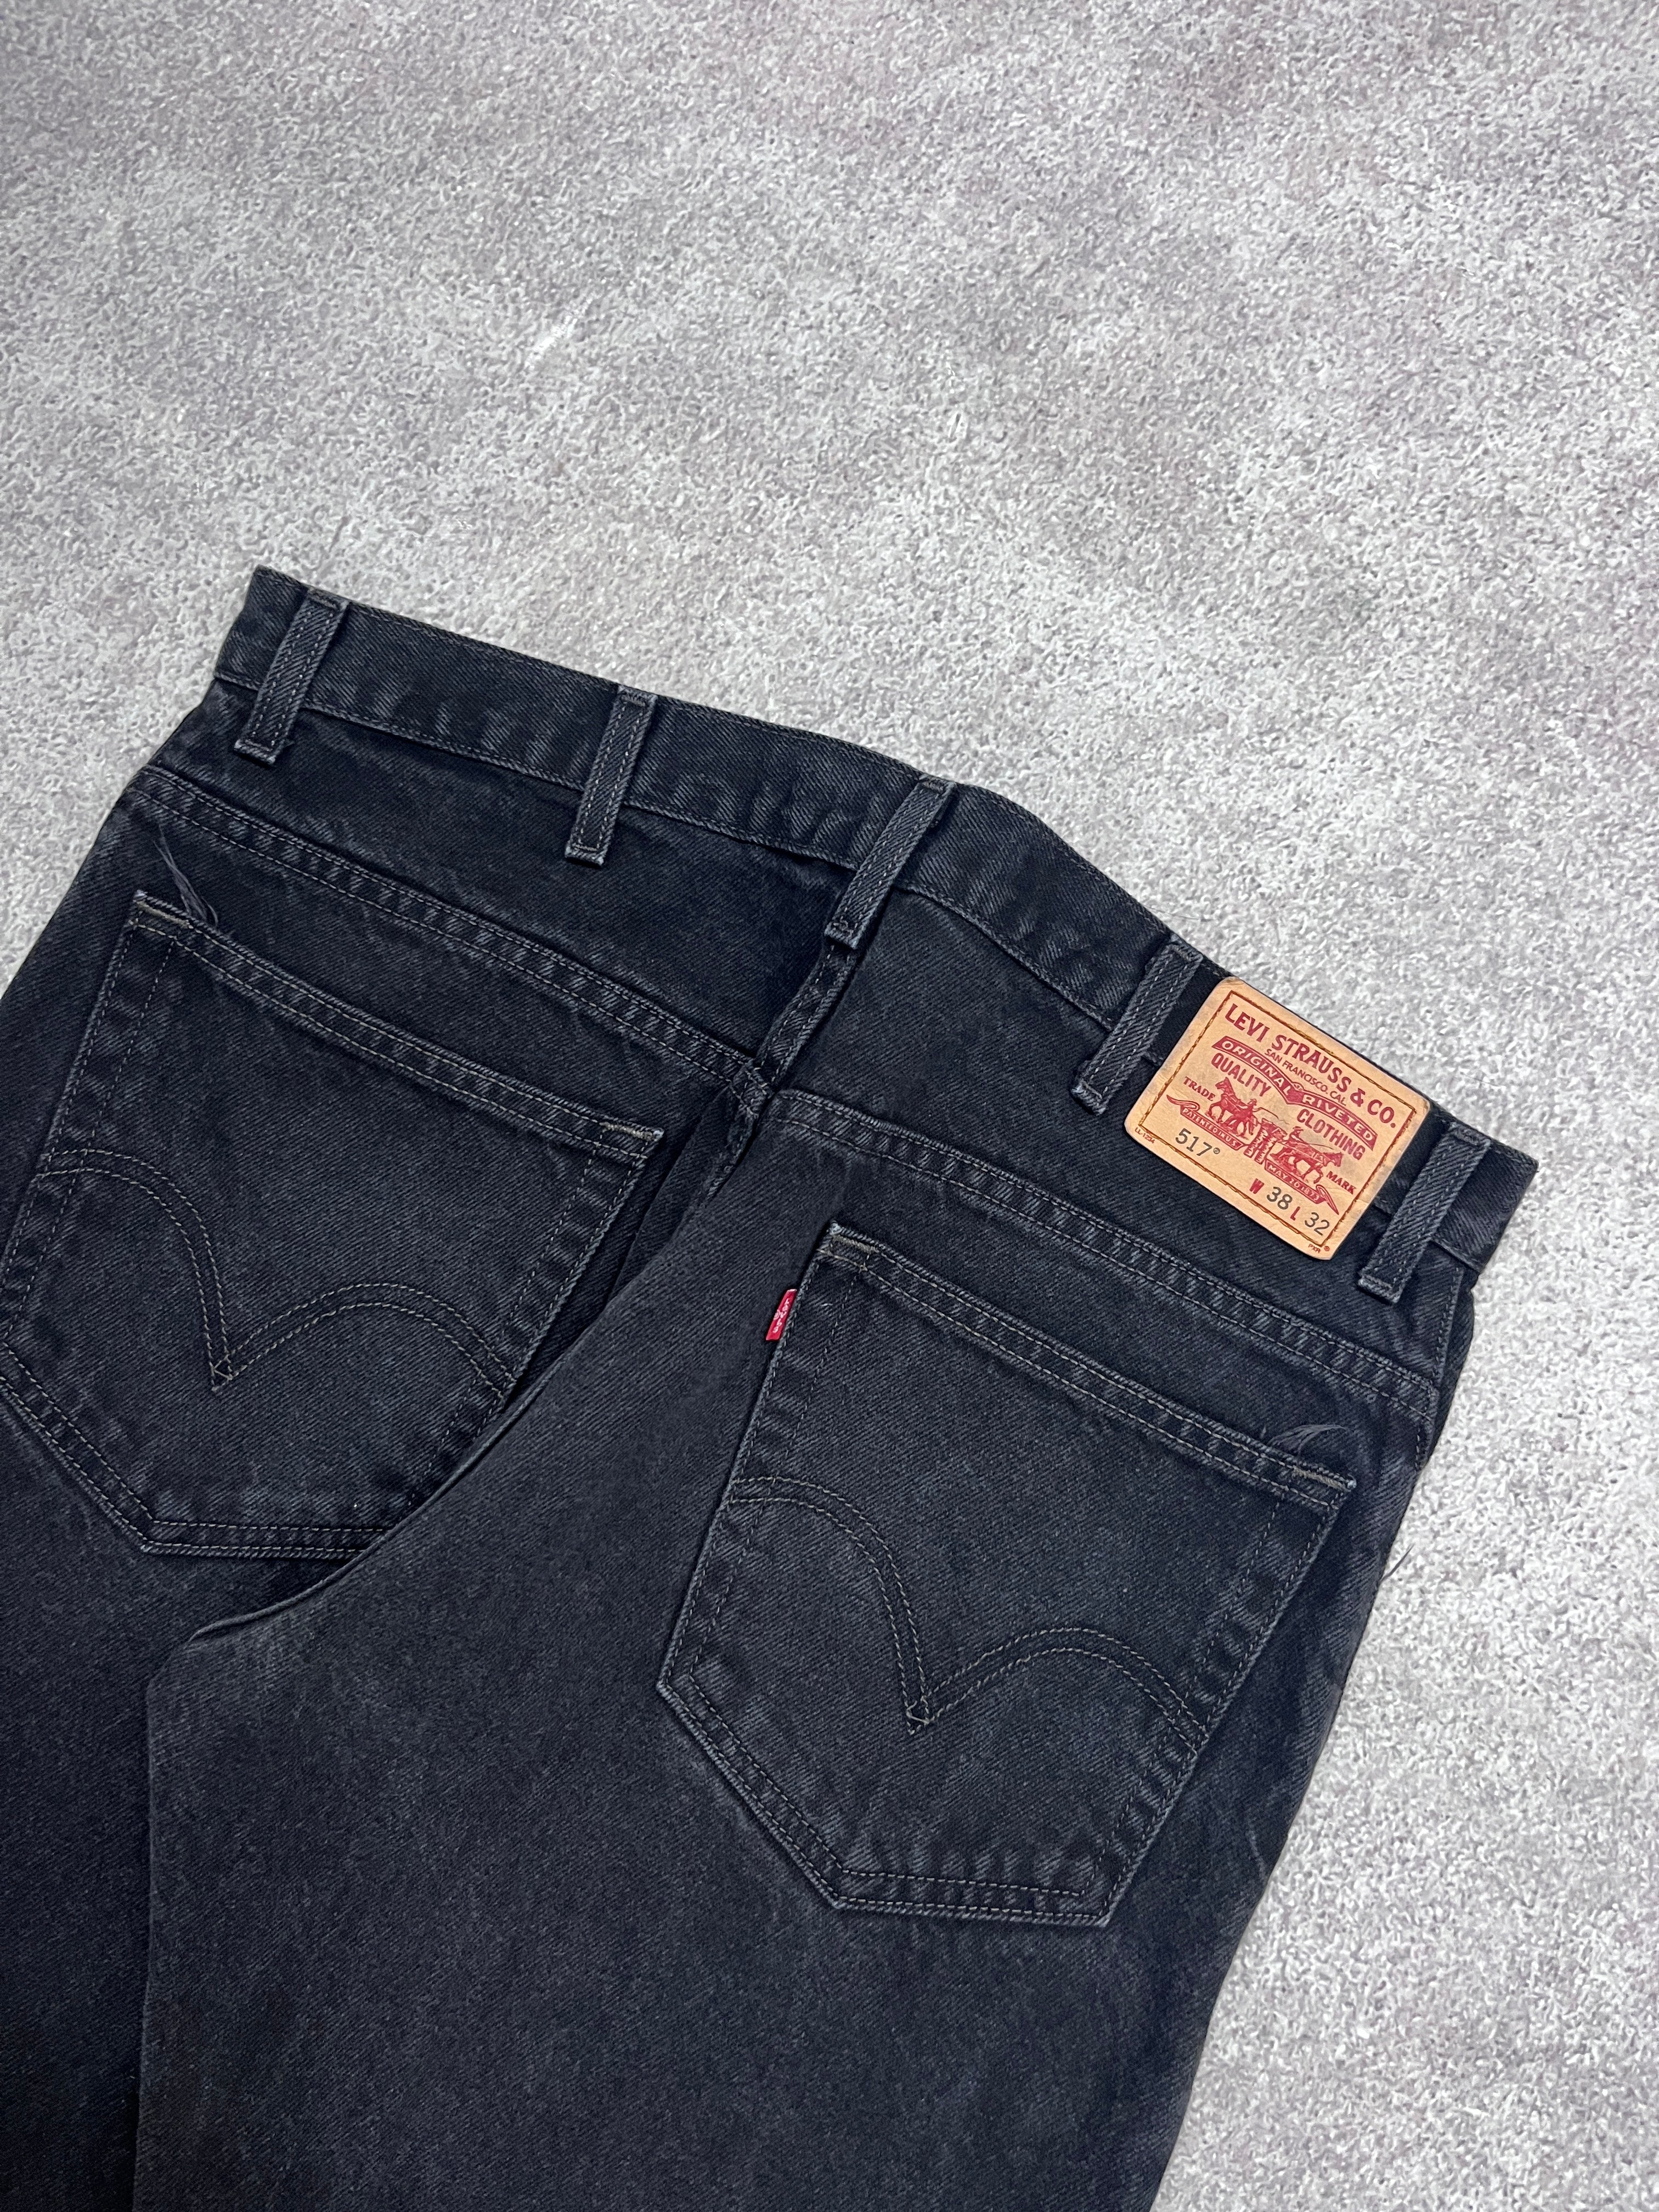 Vintage Levi 517 Denim Jeans  // W38 L32 - RHAGHOUSE VINTAGE